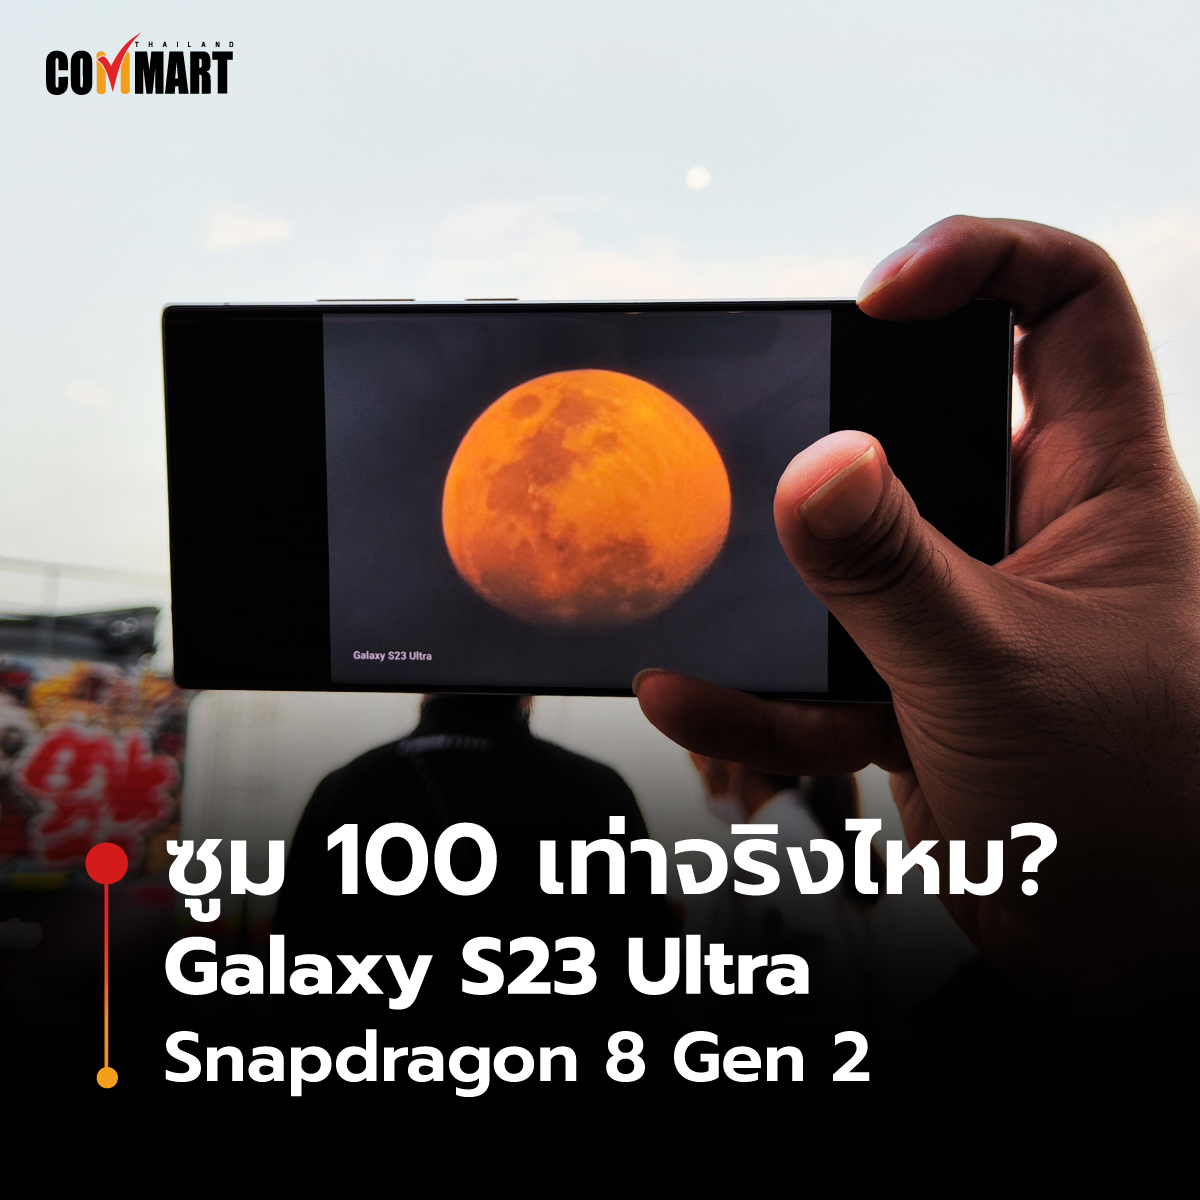 ซูม 100 เท่าจริงไหม ? Galaxy S23 Ultra ว่าที่สมาร์ทโฟนแห่งปี 2023